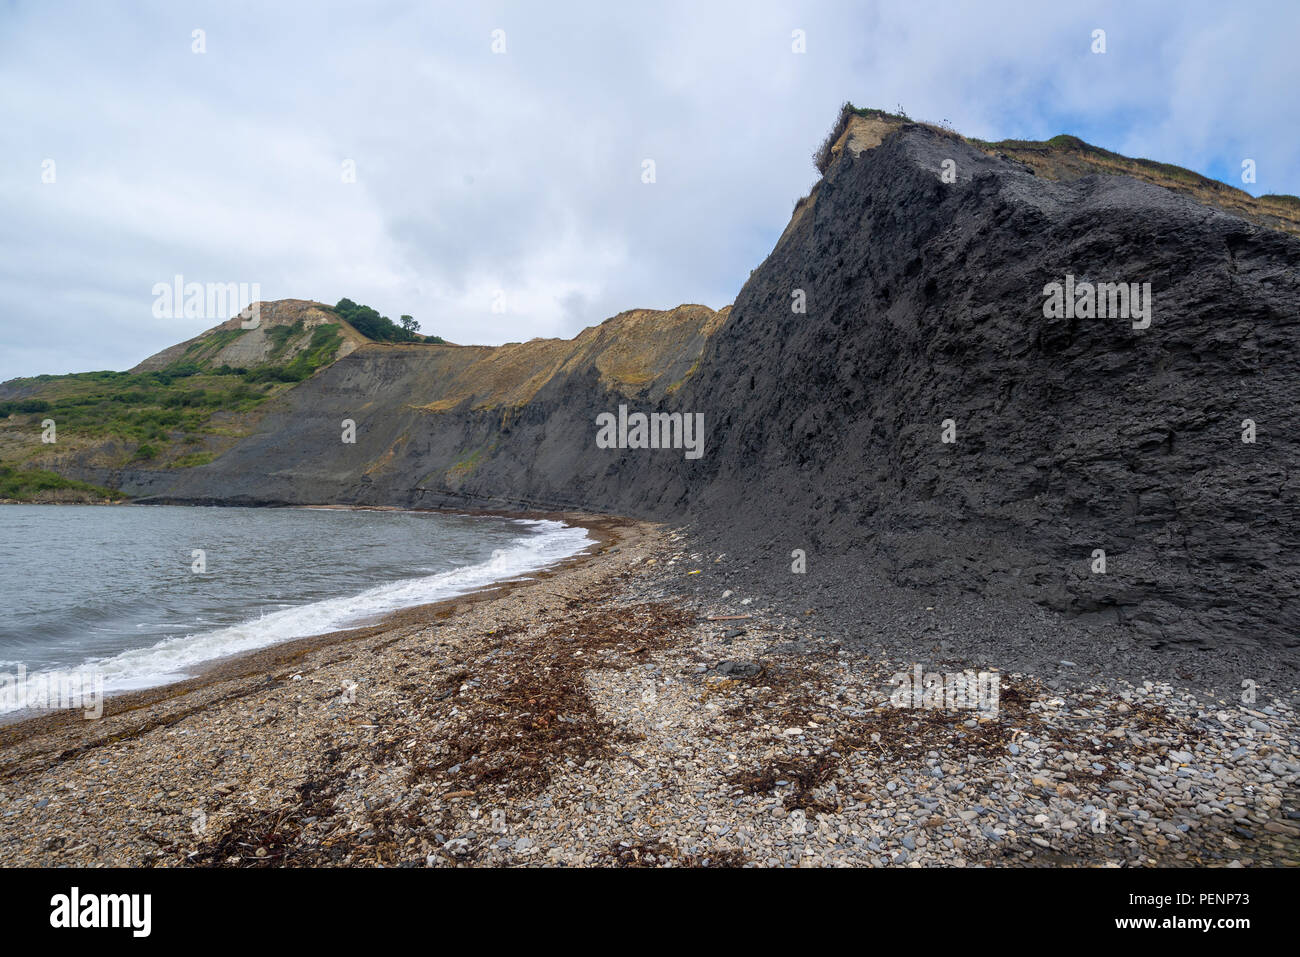 Plage sauvage à Chapman's Pool, Côte Jurassique, Purbeck, Dorset, England, UK avec le black rock cliffs. Banque D'Images